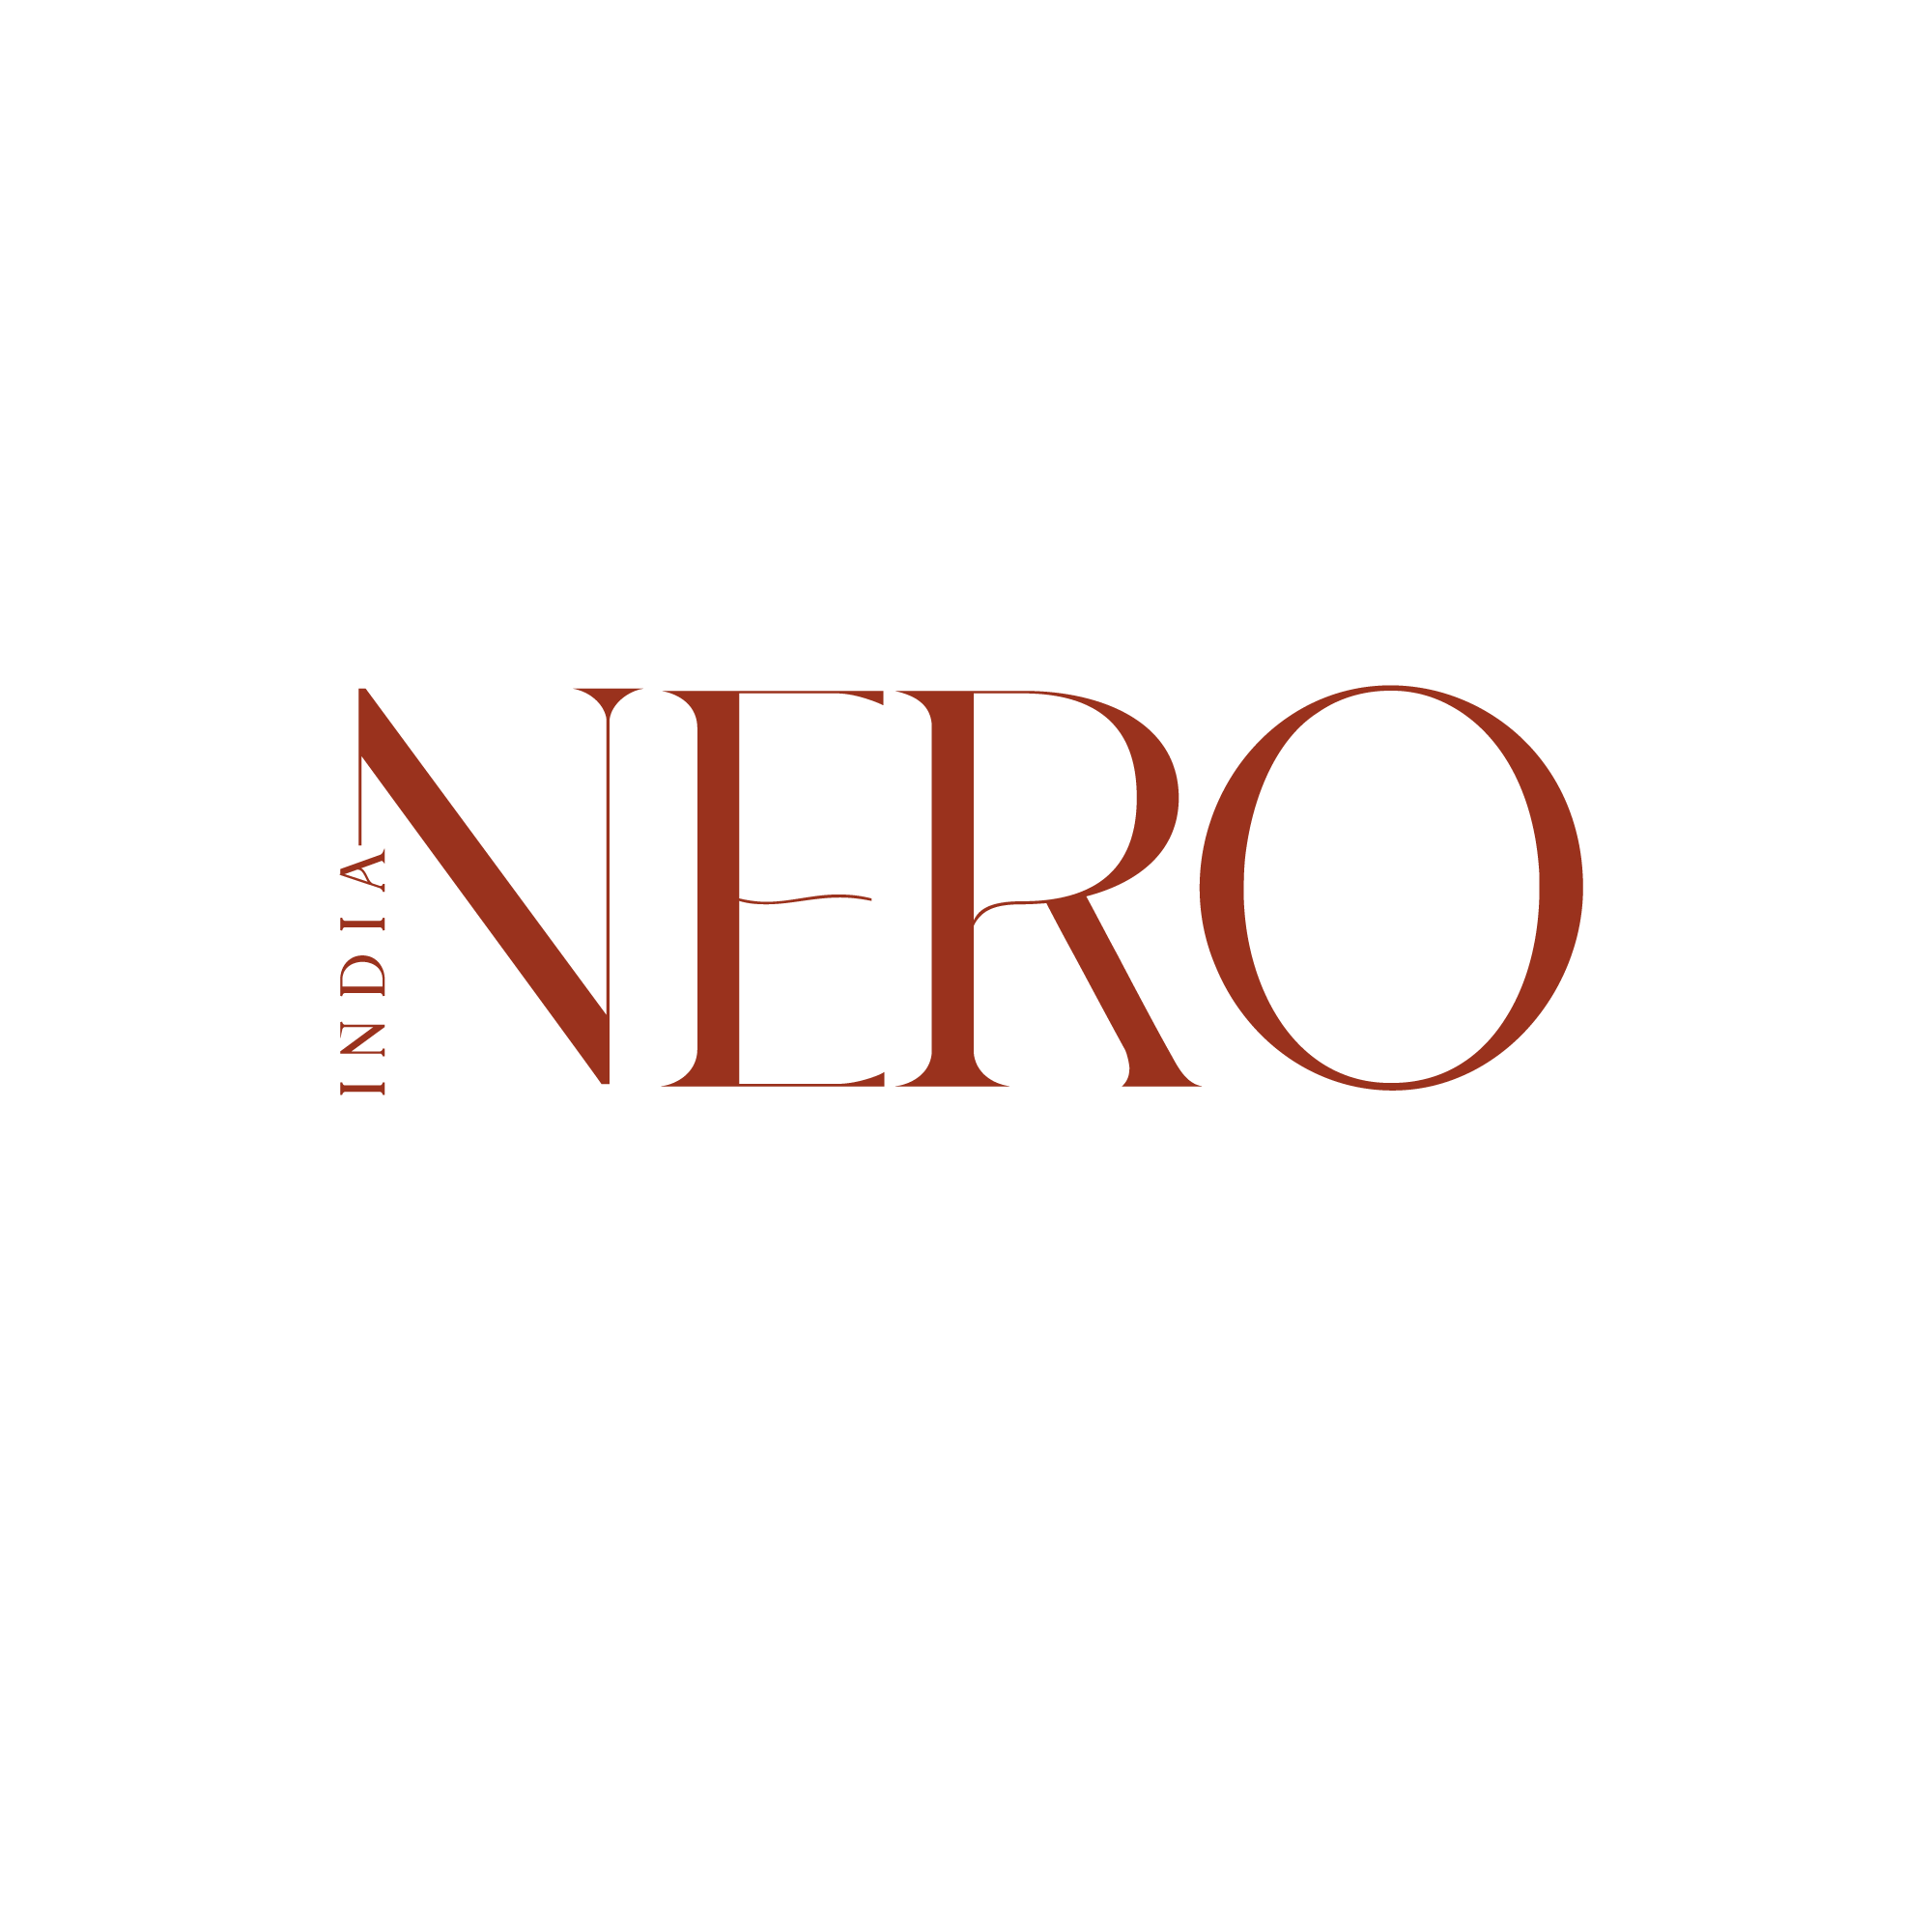 Nero - Accessories